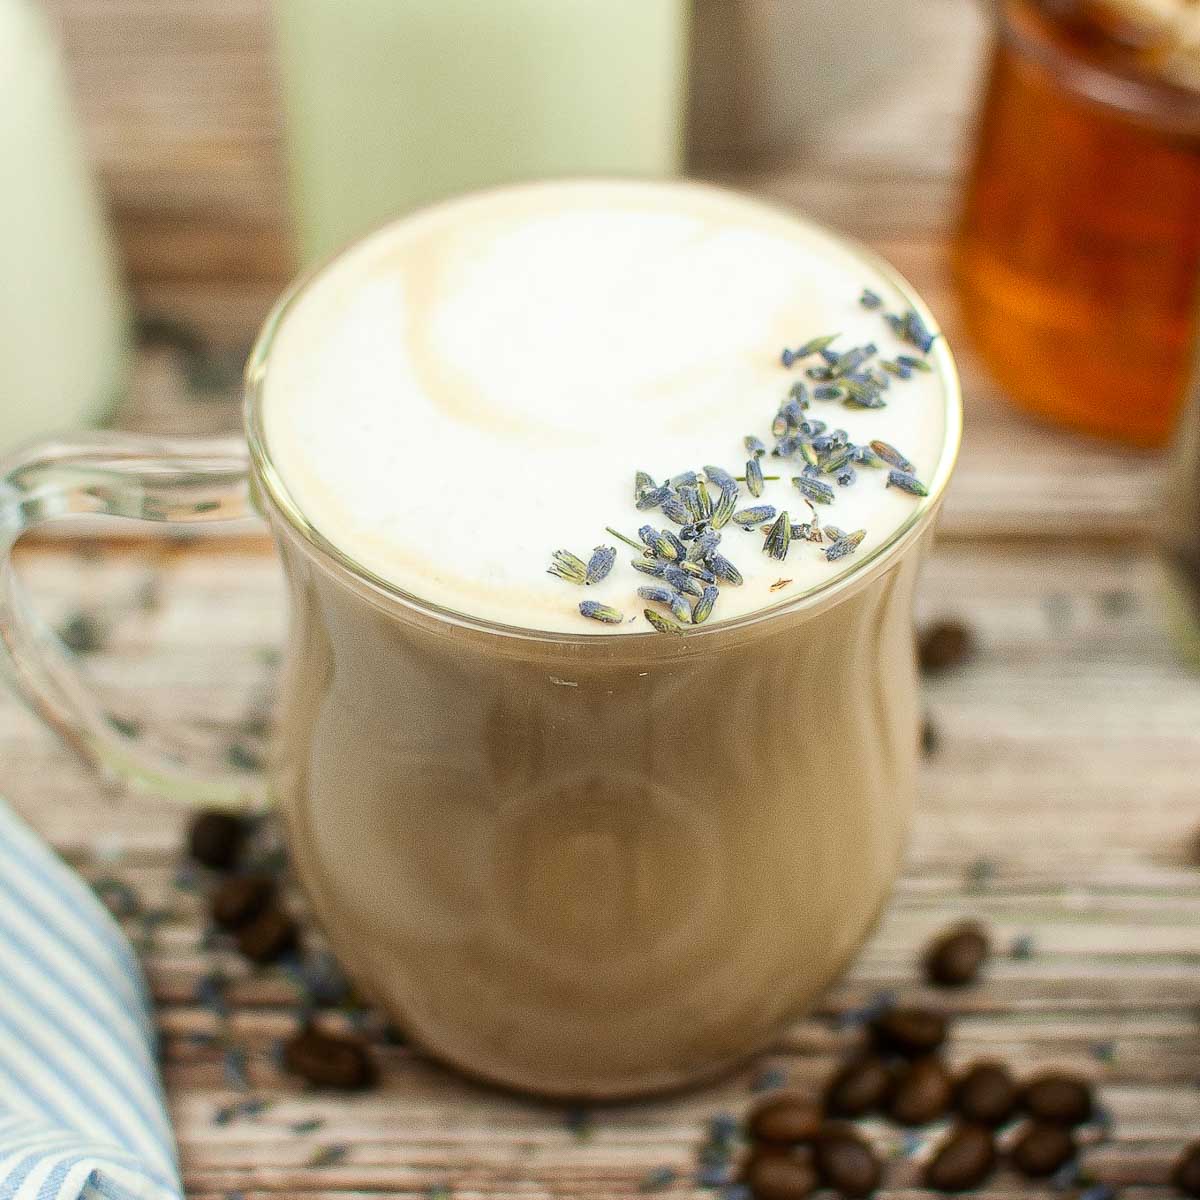 Honey lavender latte garnished with lavender flowers